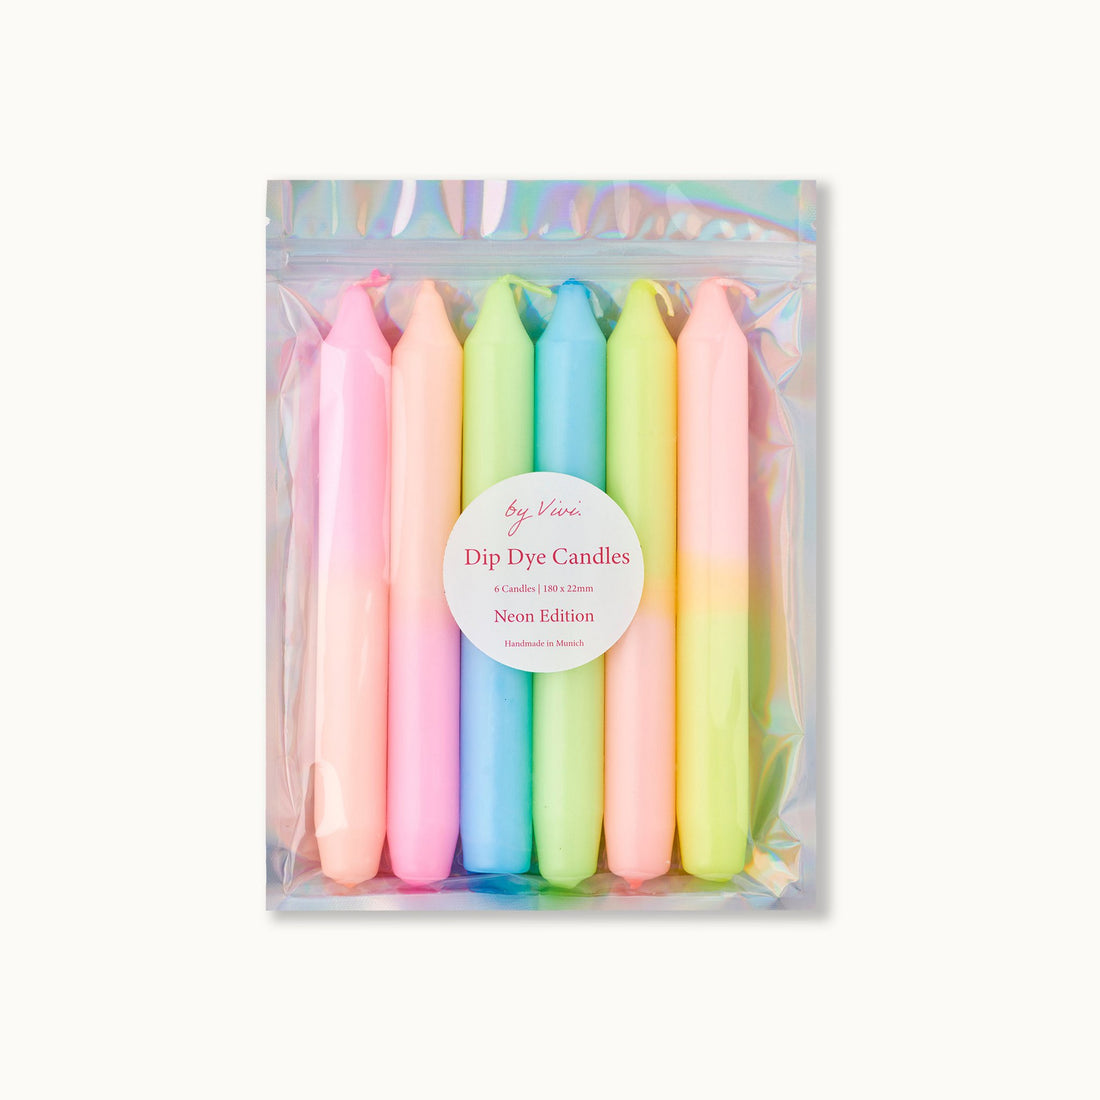 Dip-dye kaarsen in een set: Neon Edition